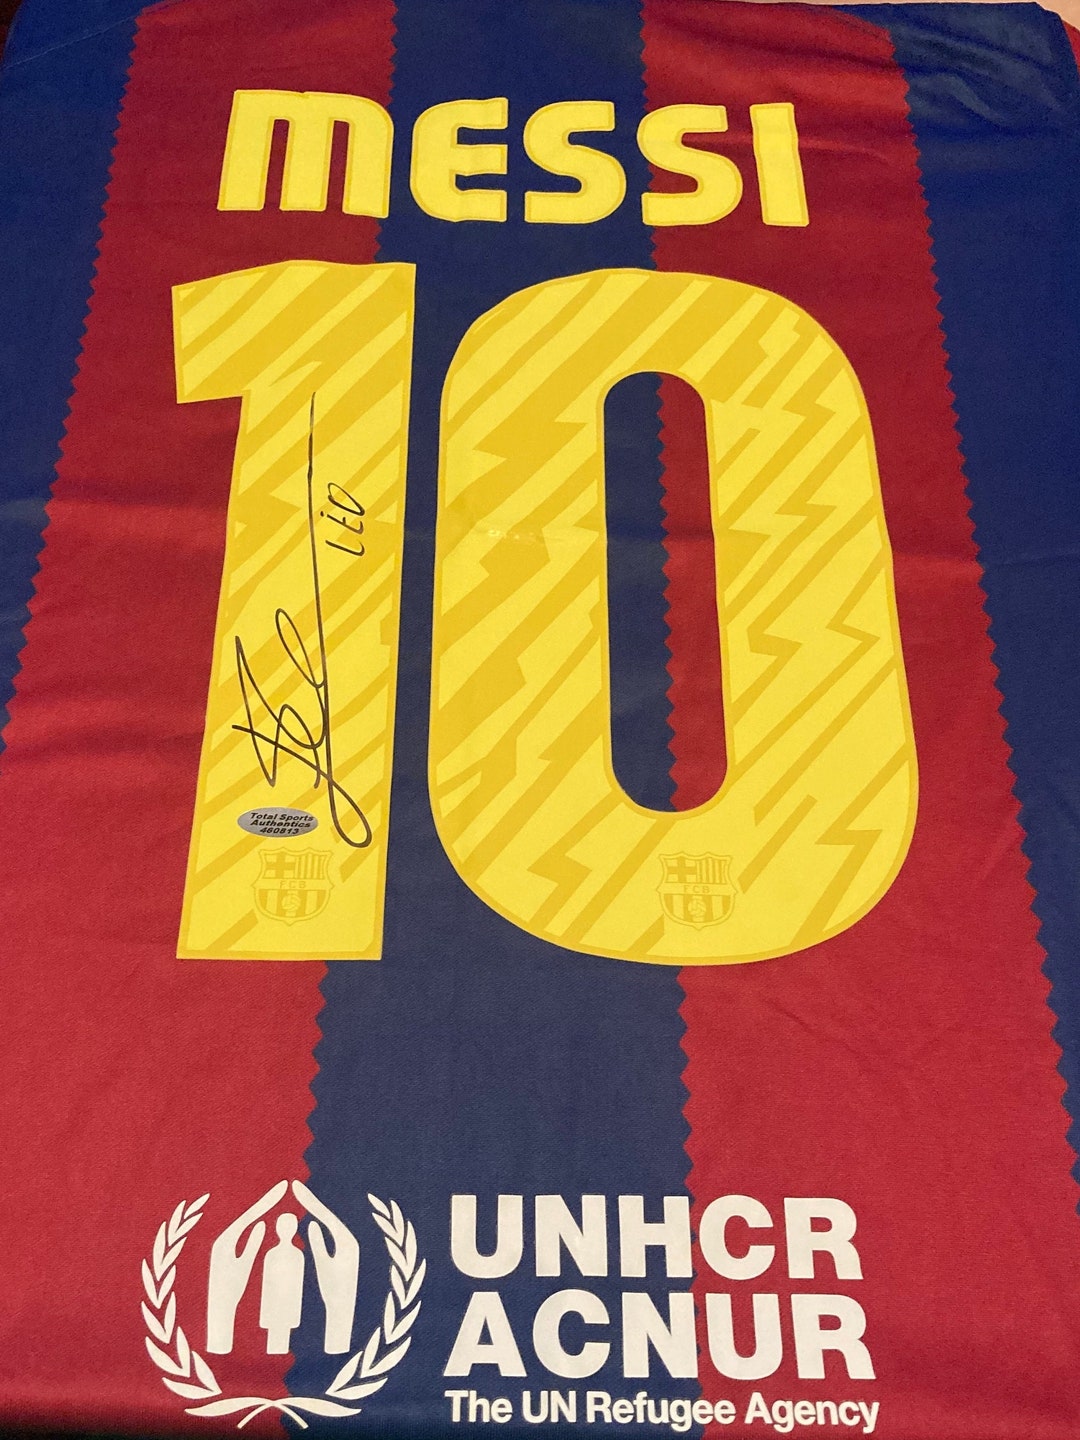 Lionel Messi Signed 10 FC Barcelona Jersey COA & Hologram - Etsy